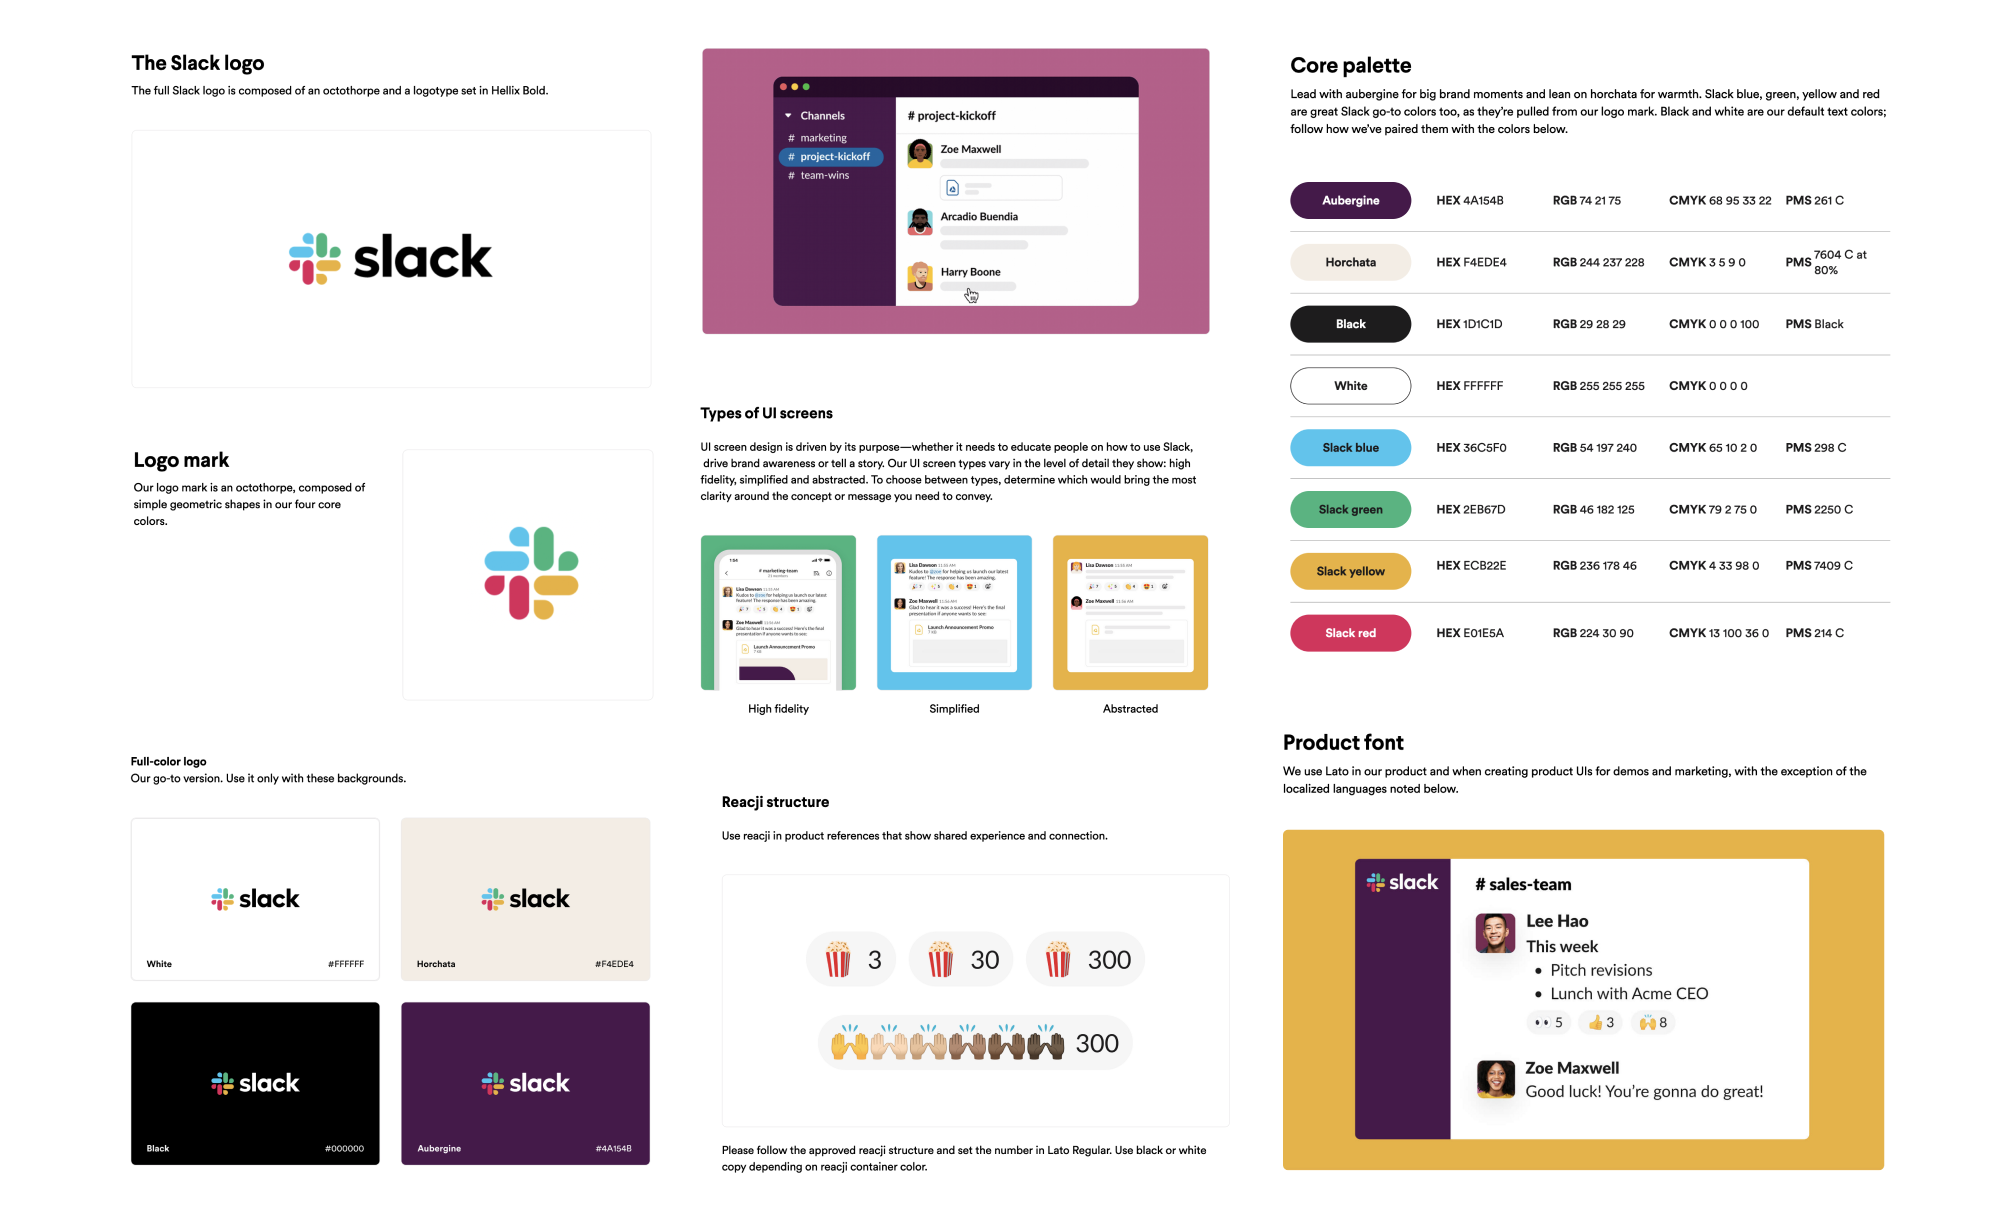 Fragmenty strony internetowej z wytycznymi języka wizualnego firmy Slack. Przedstawiają one zasady użycia logo, kolorystykę firmową oraz elementy aplikacji z wytycznymi do użycia typografii i emoji w reakcjach na wiadomości.